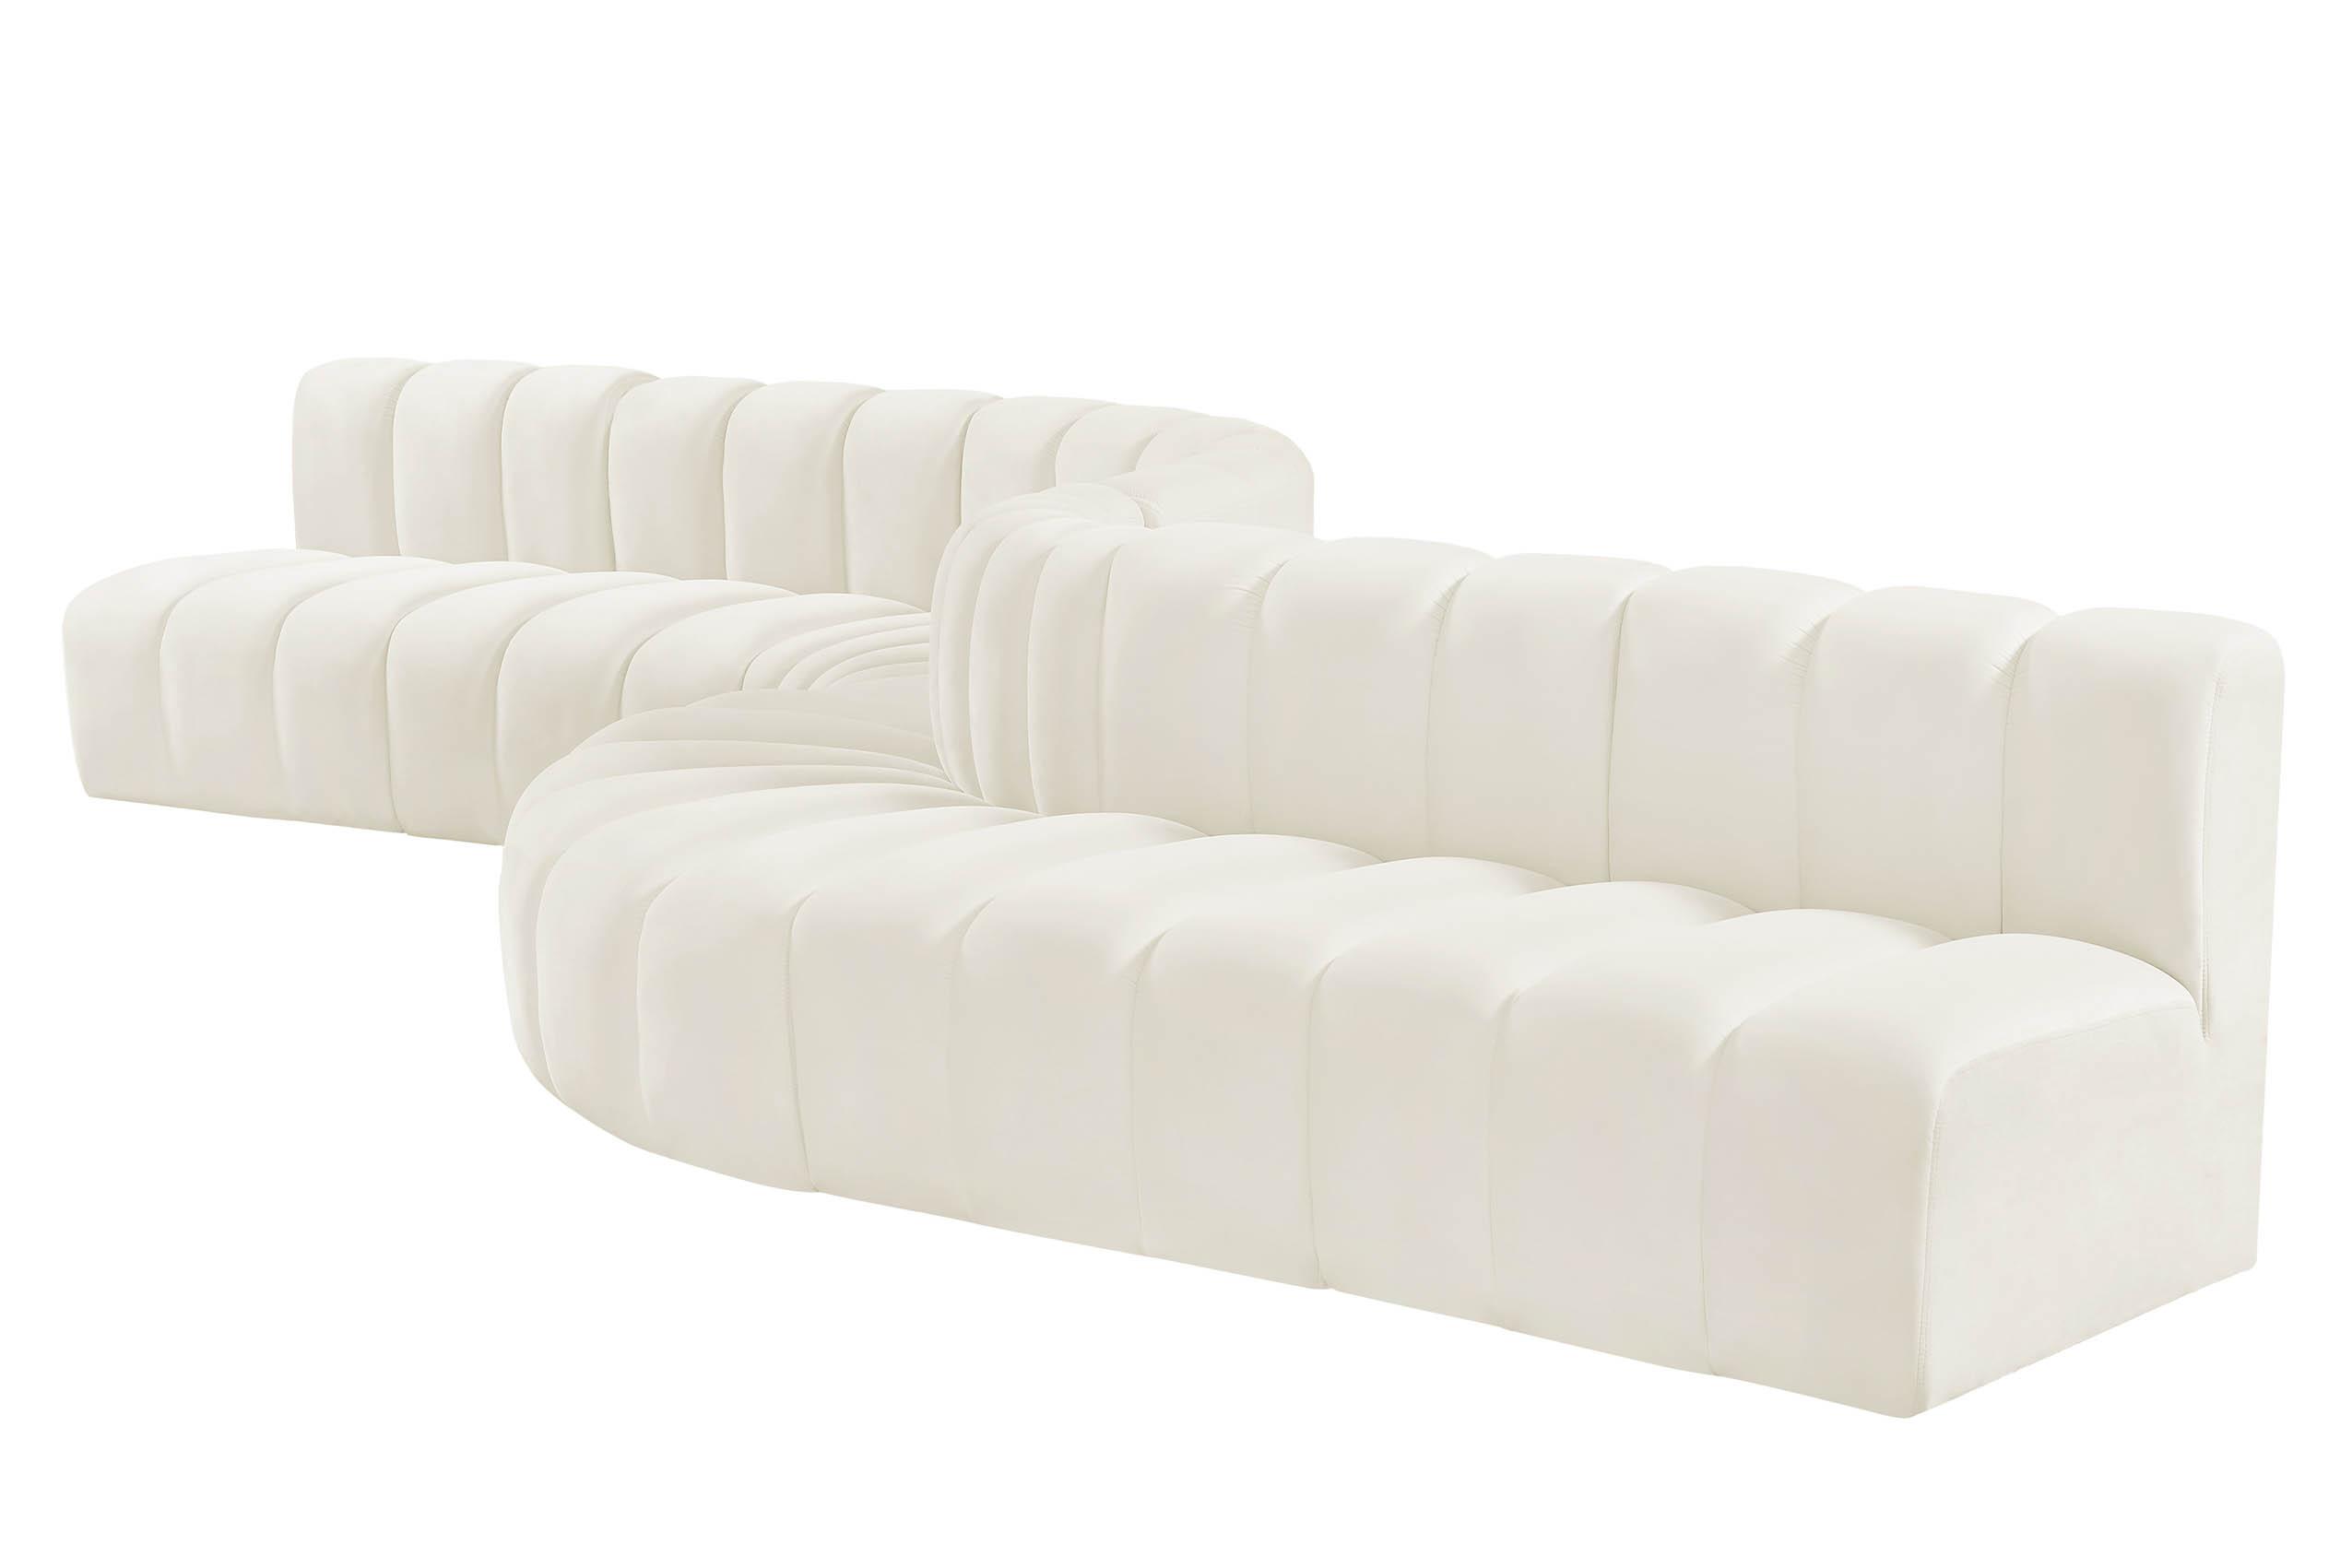 

    
Meridian Furniture ARC 103Cream-S8C Modular Sectional Sofa Cream 103Cream-S8C
